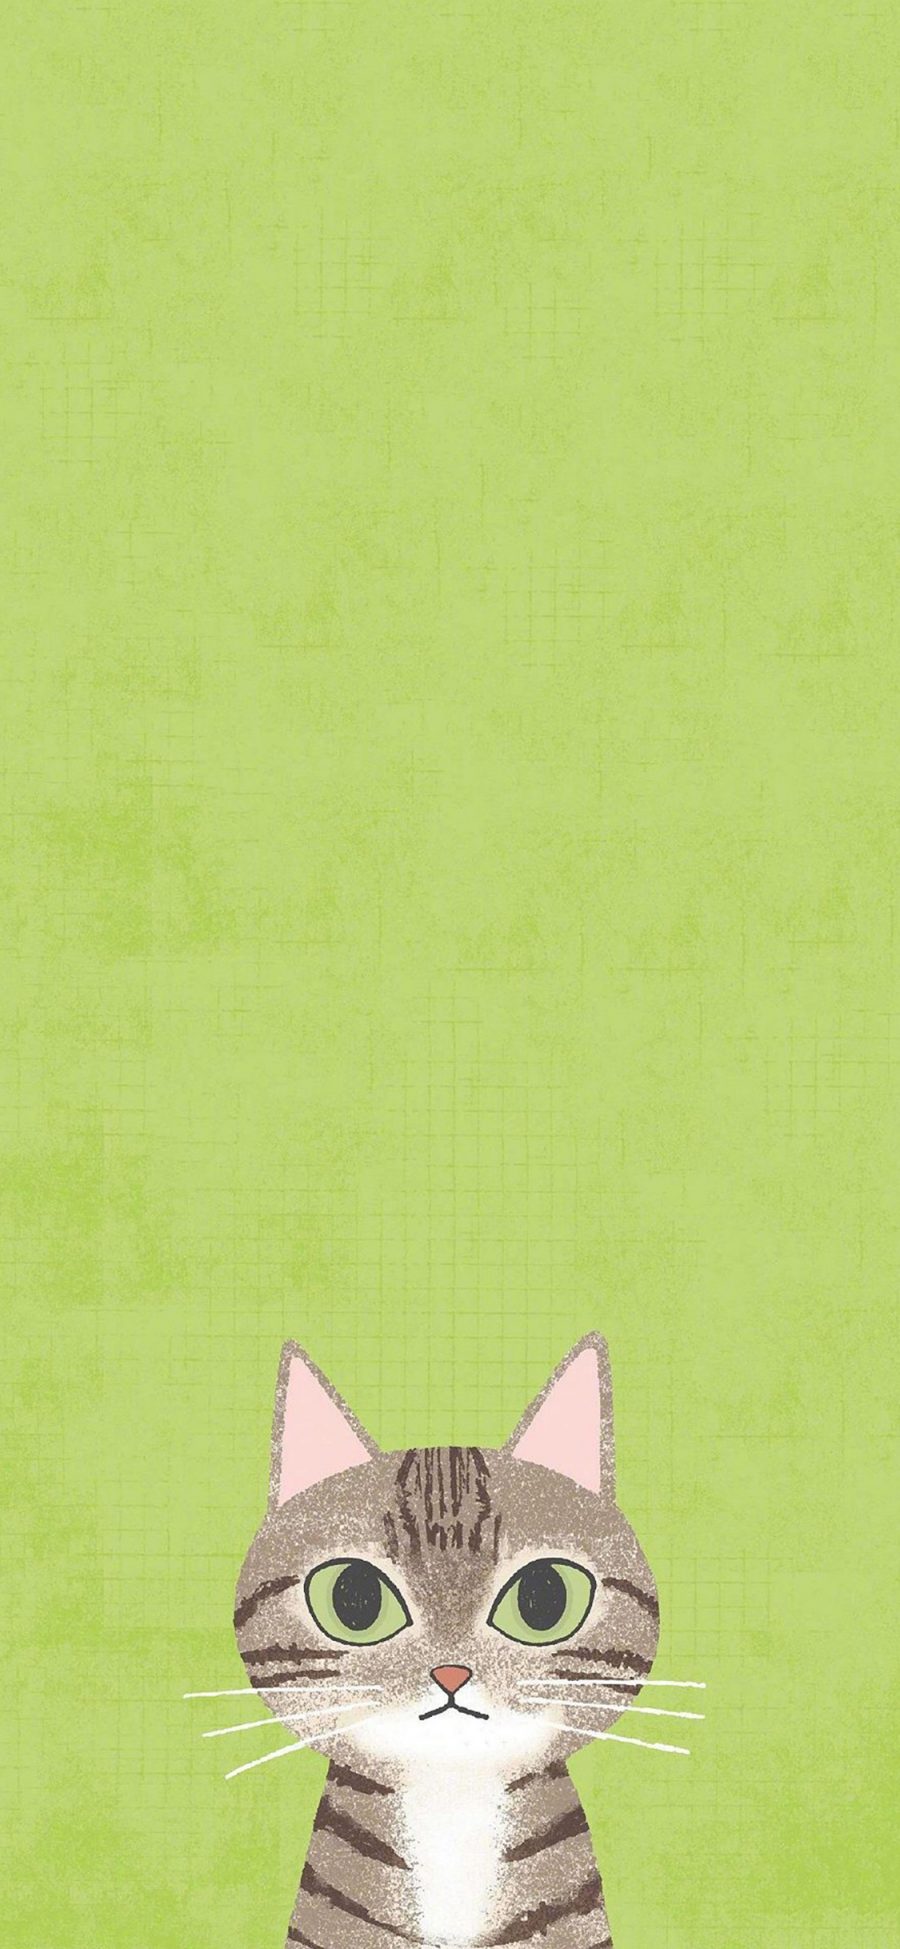 [2436×1125]卡通 猫咪  绘画 可爱 绿底 苹果手机动漫壁纸图片